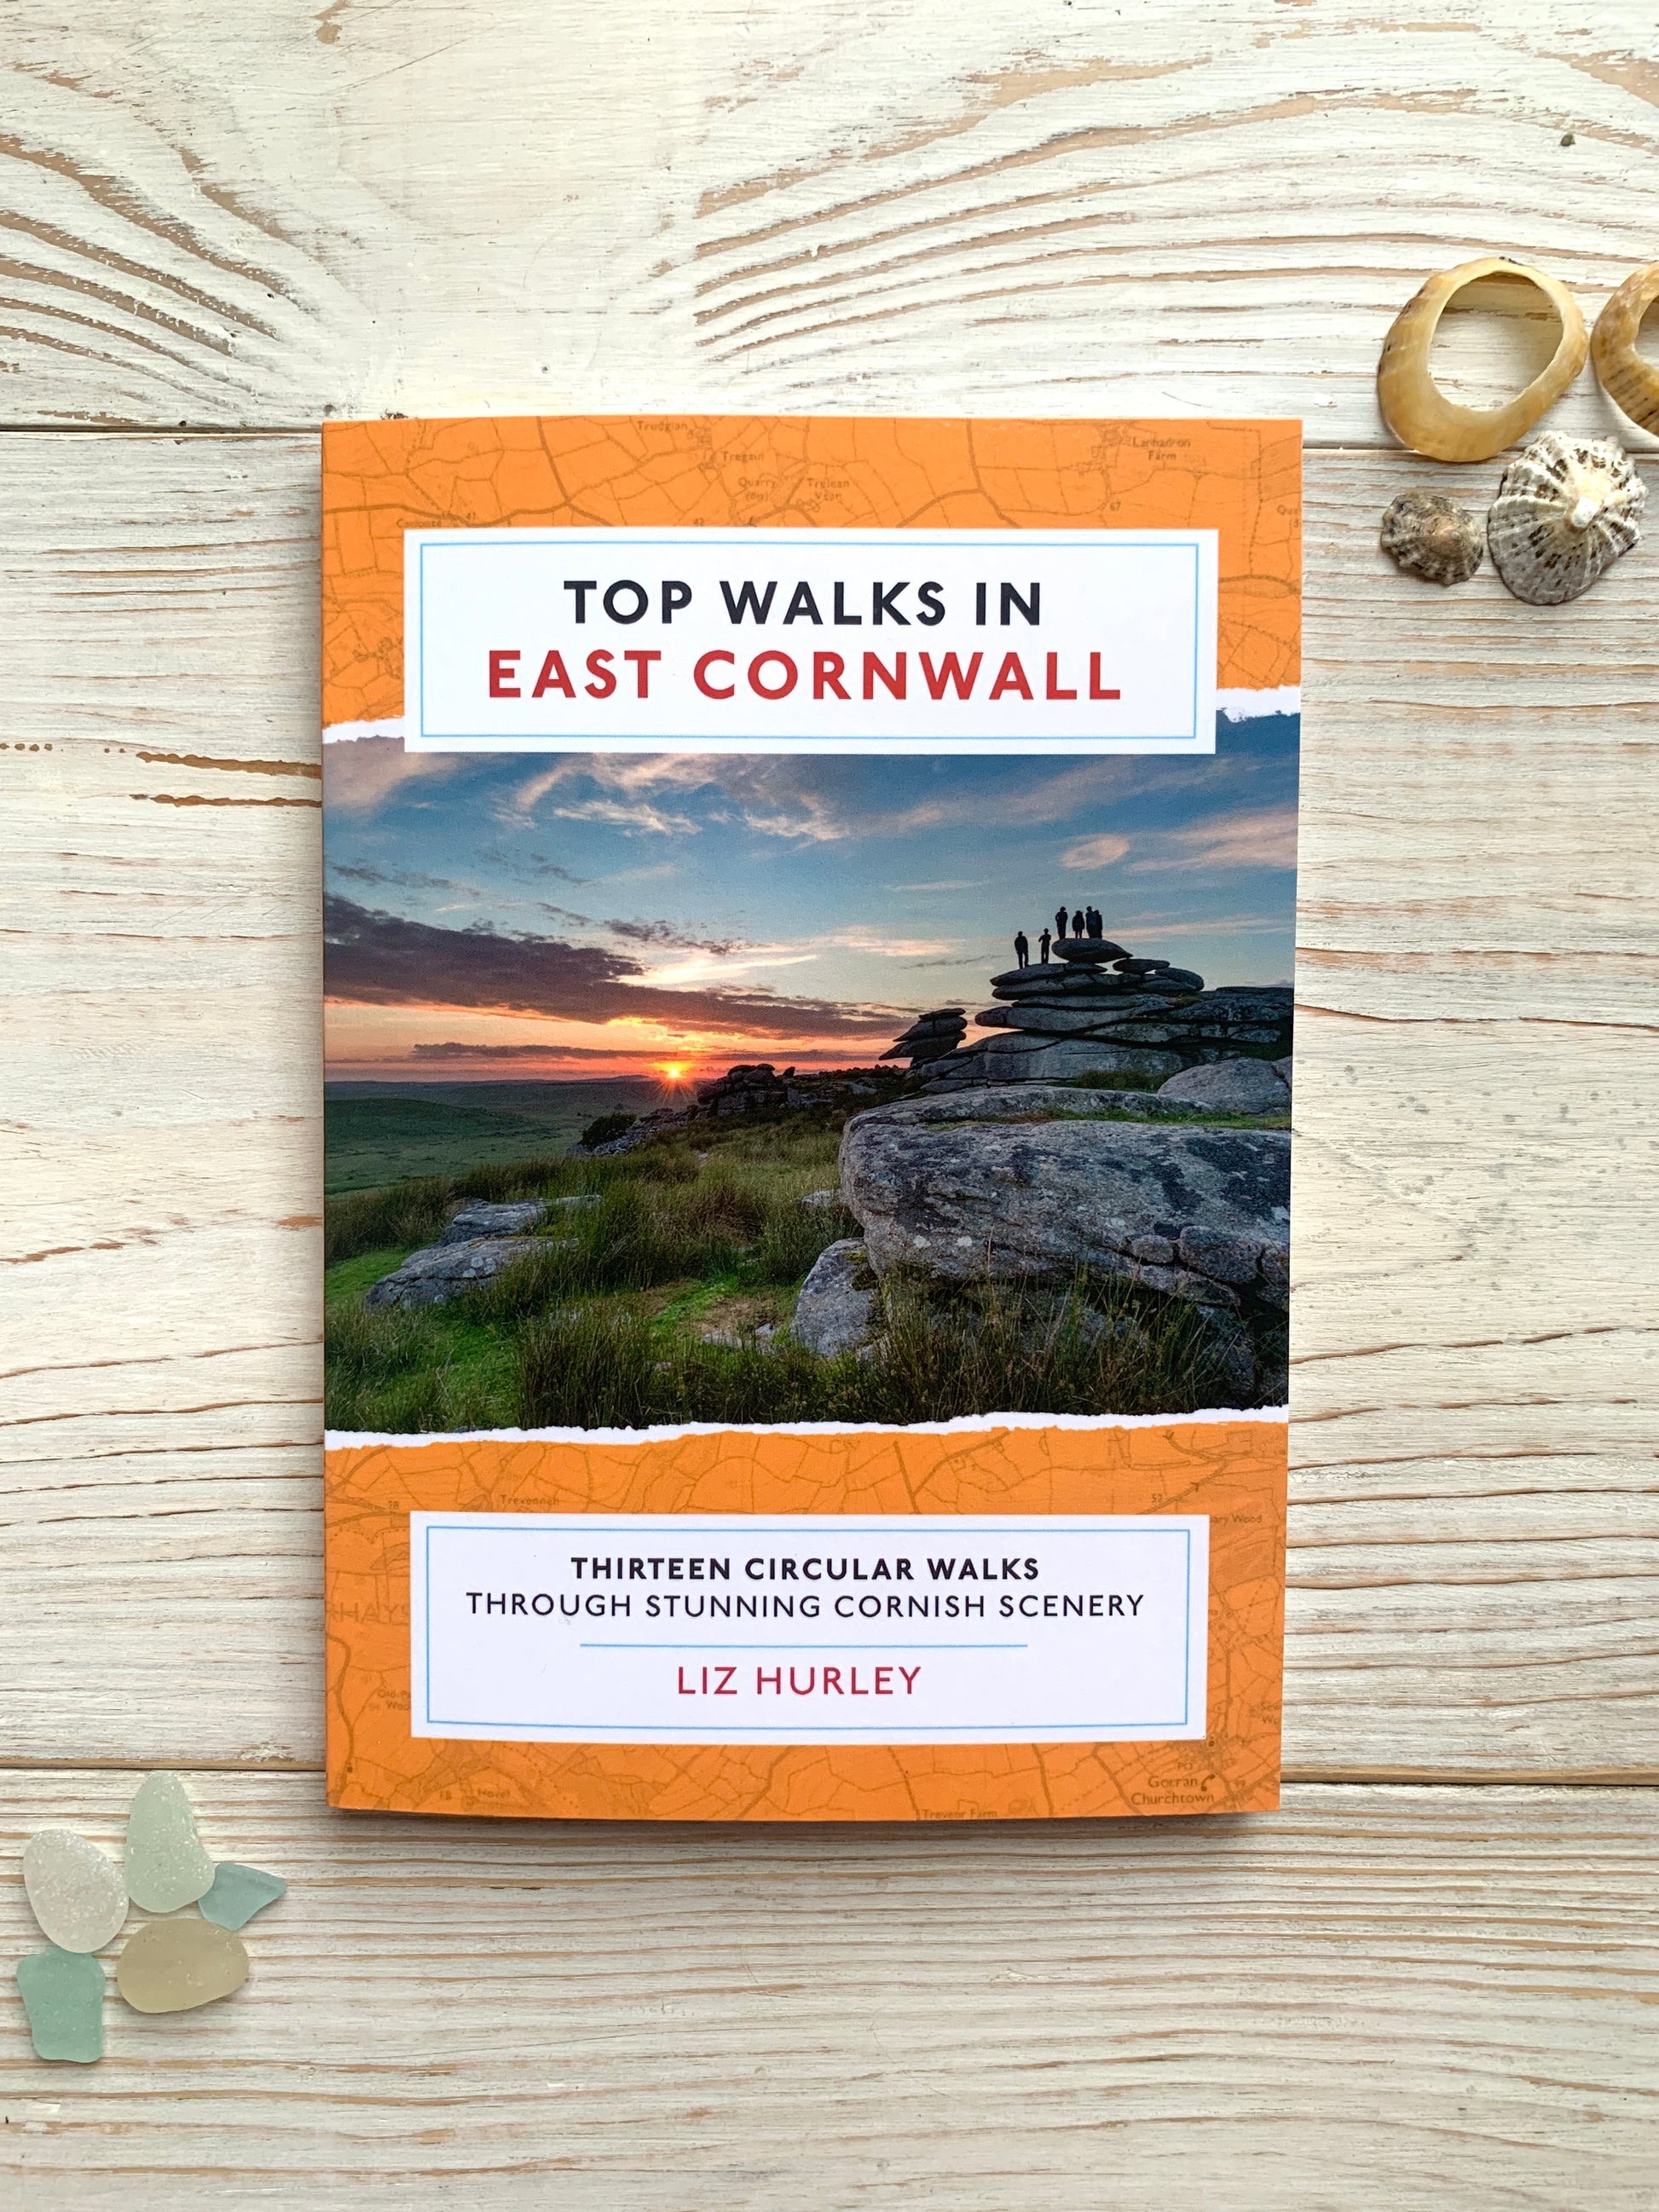 Top Walks in East Cornwall book